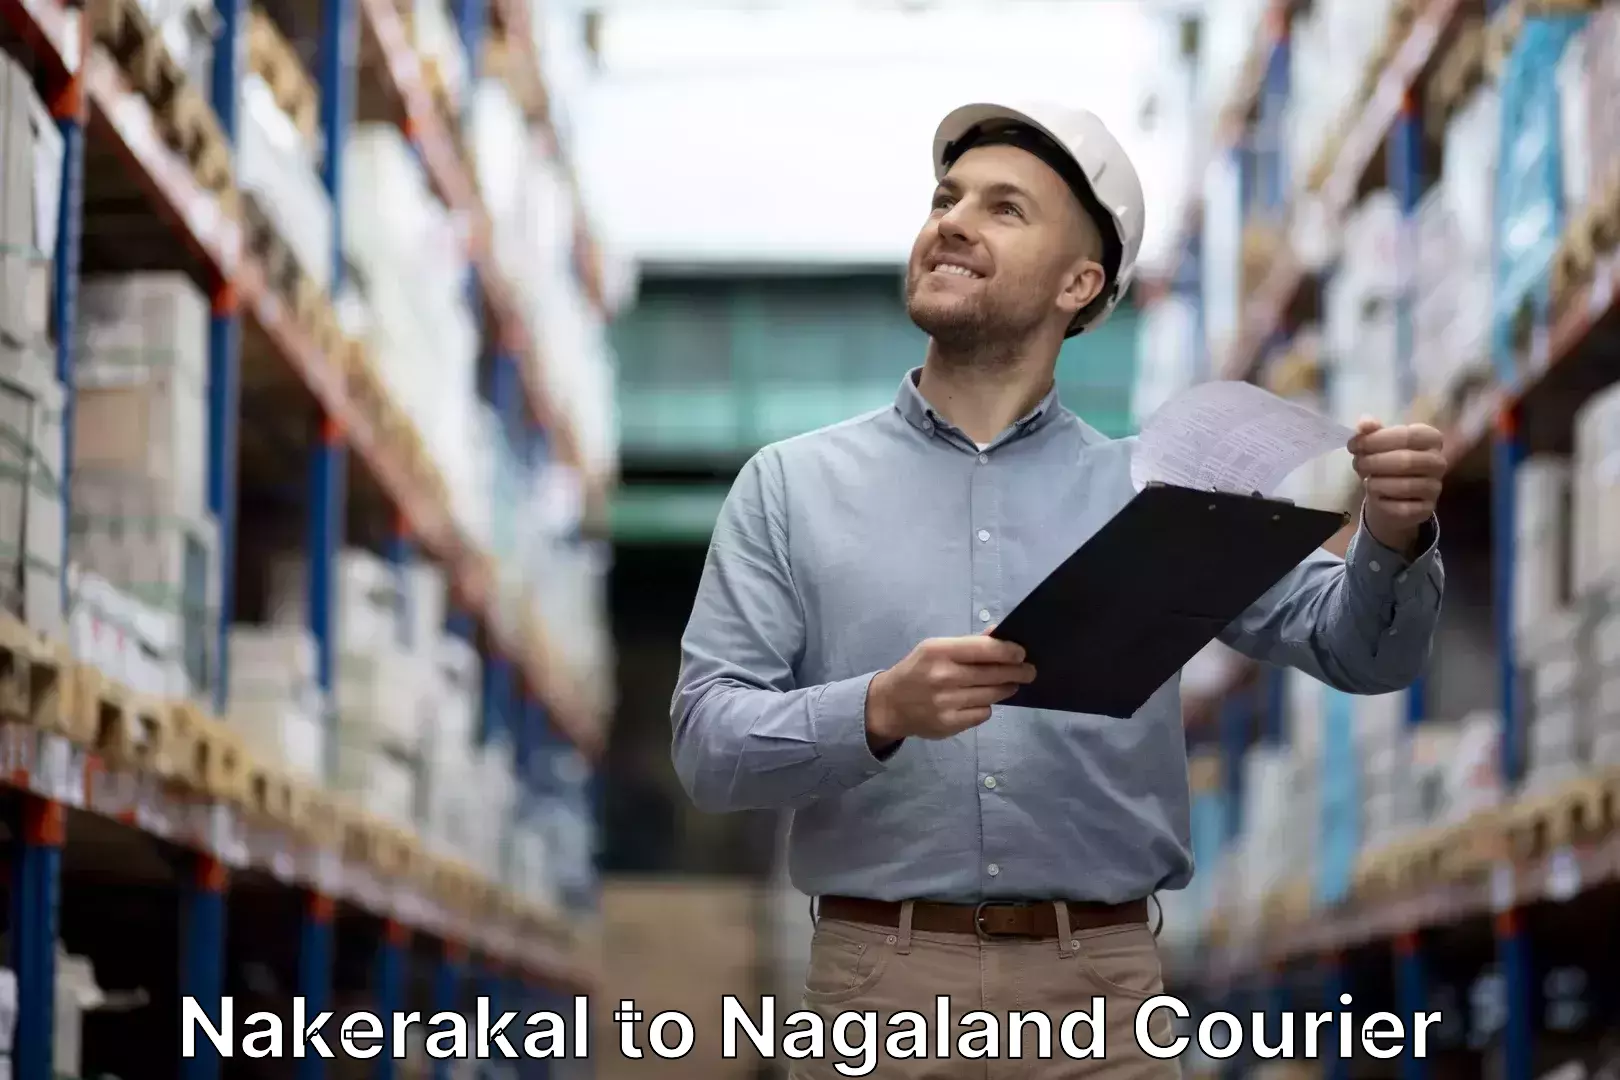 Baggage relocation service Nakerakal to Nagaland